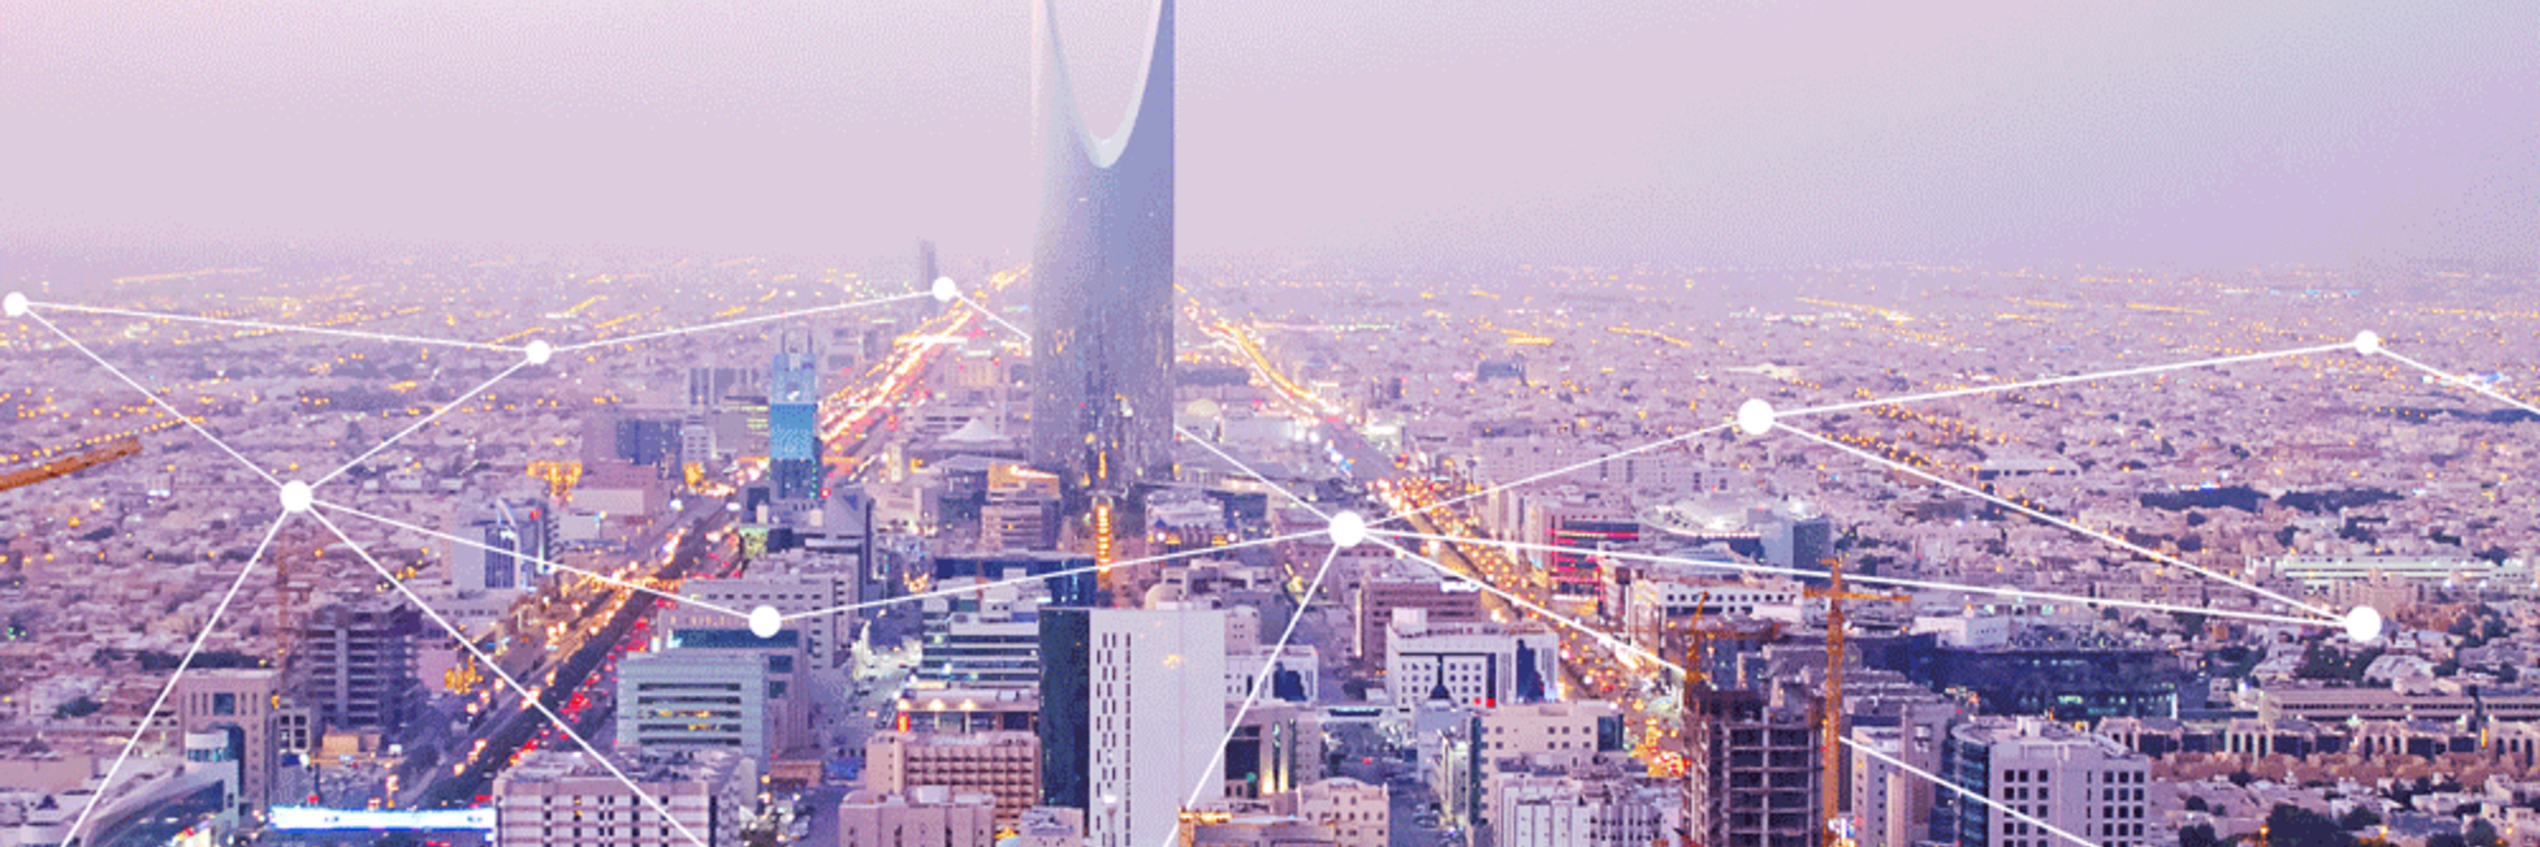 1 Million HYDRUS Ultrasonic Water Meters installed in Saudi Arabia